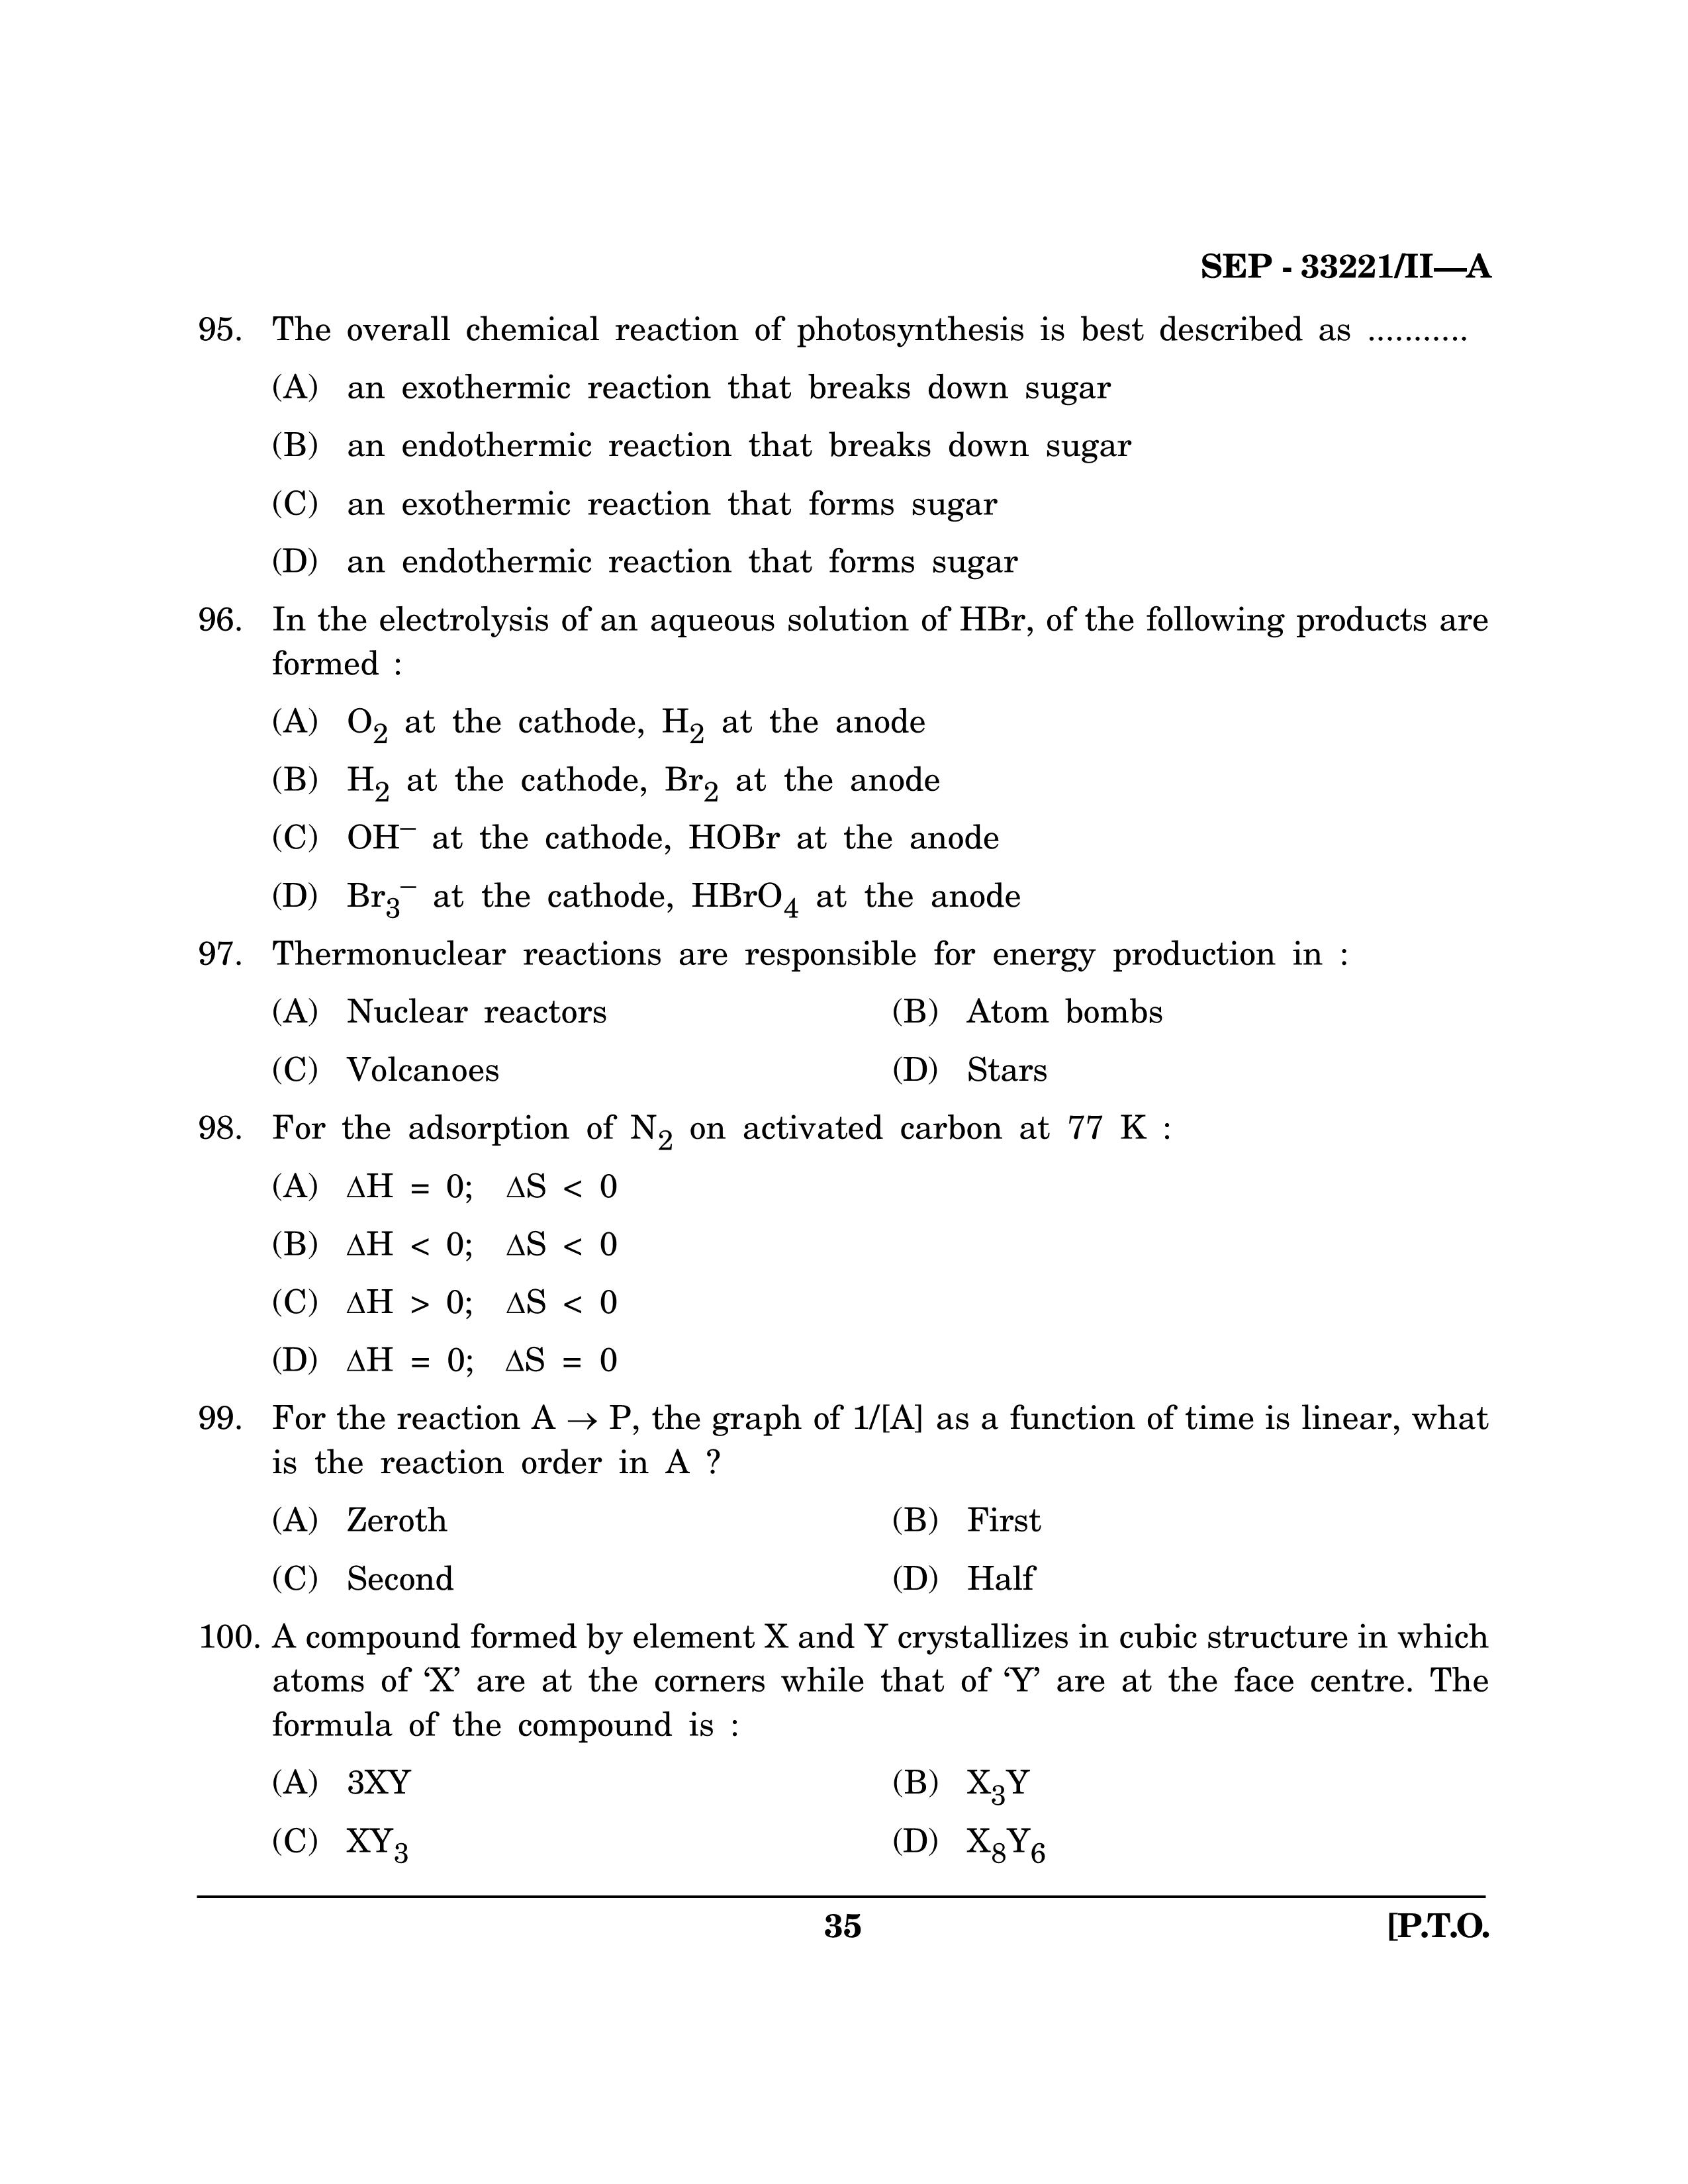 Maharashtra SET Chemical Sciences Exam Question Paper September 2021 34